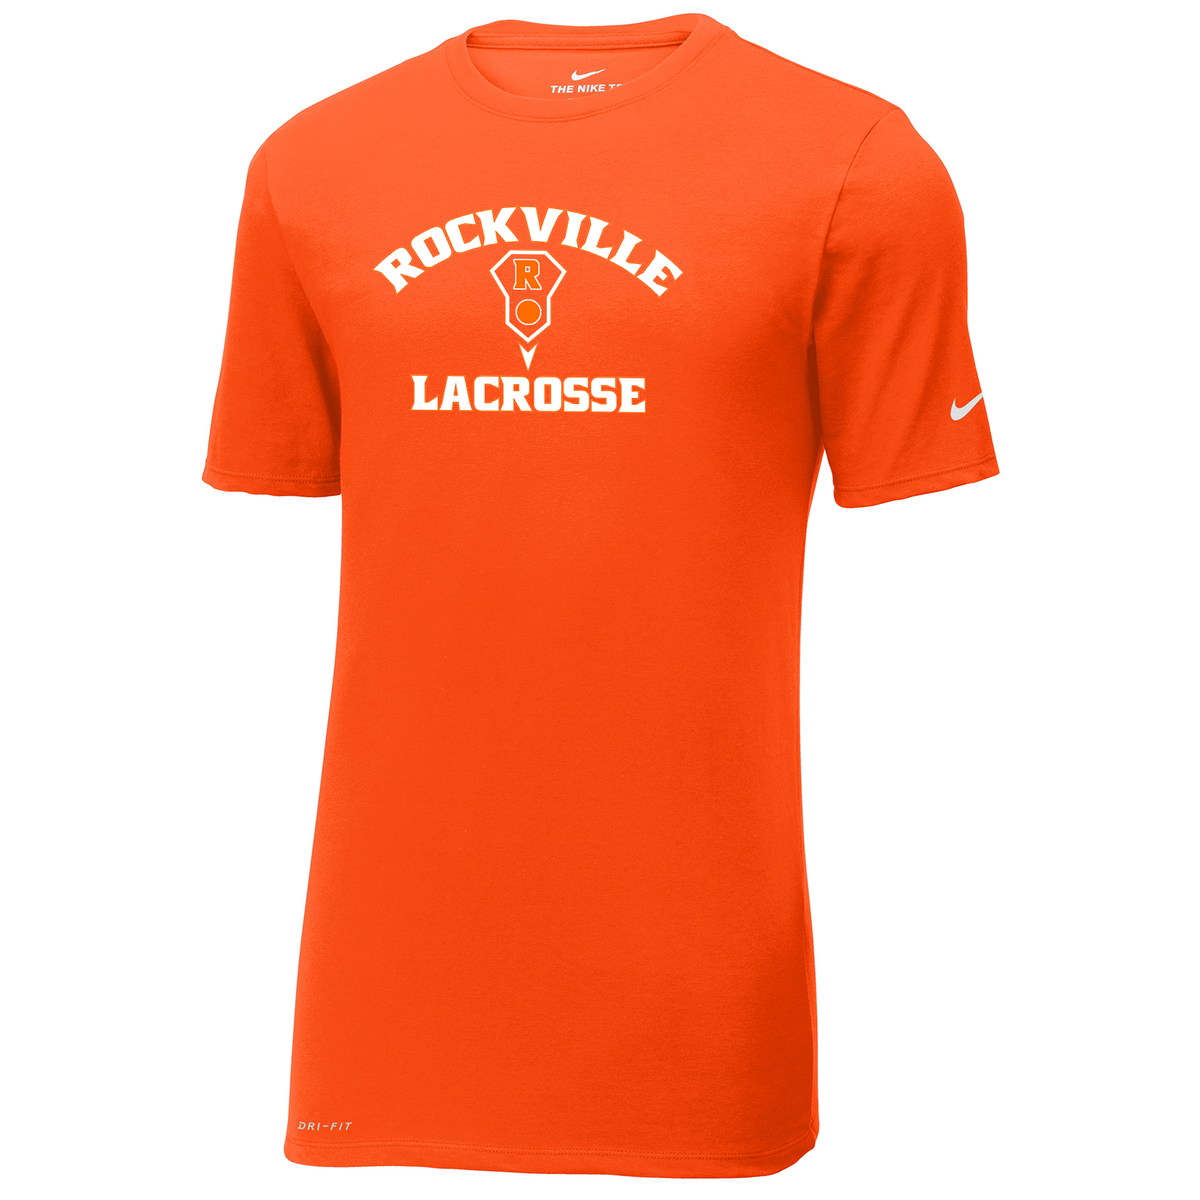 Rockville HS Girls Lacrosse Nike Dri-FIT Tee